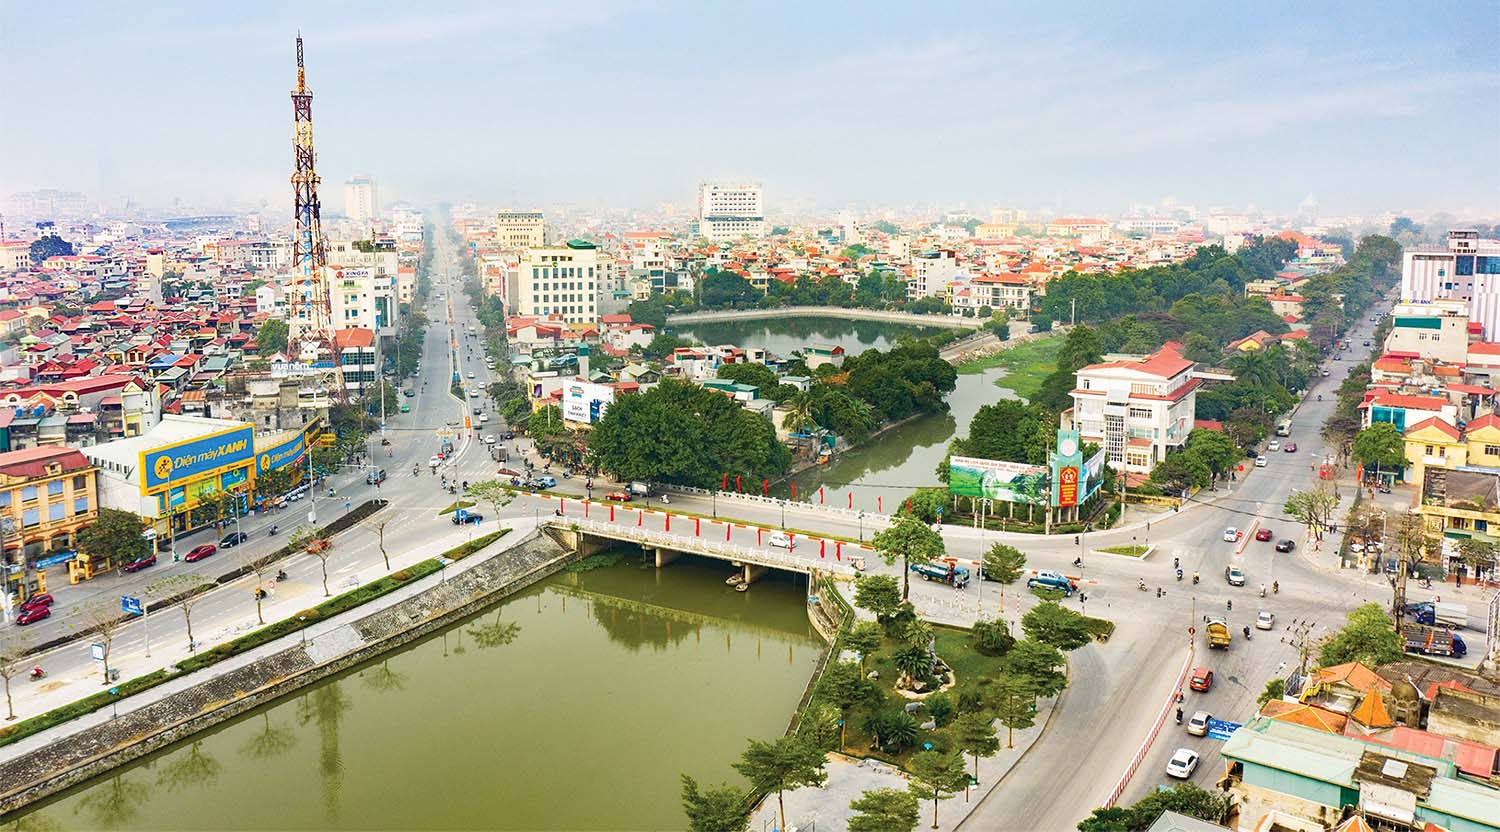 Một huyện tại Ninh Bình sắp làm khu đô thị rộng hơn 900 ha